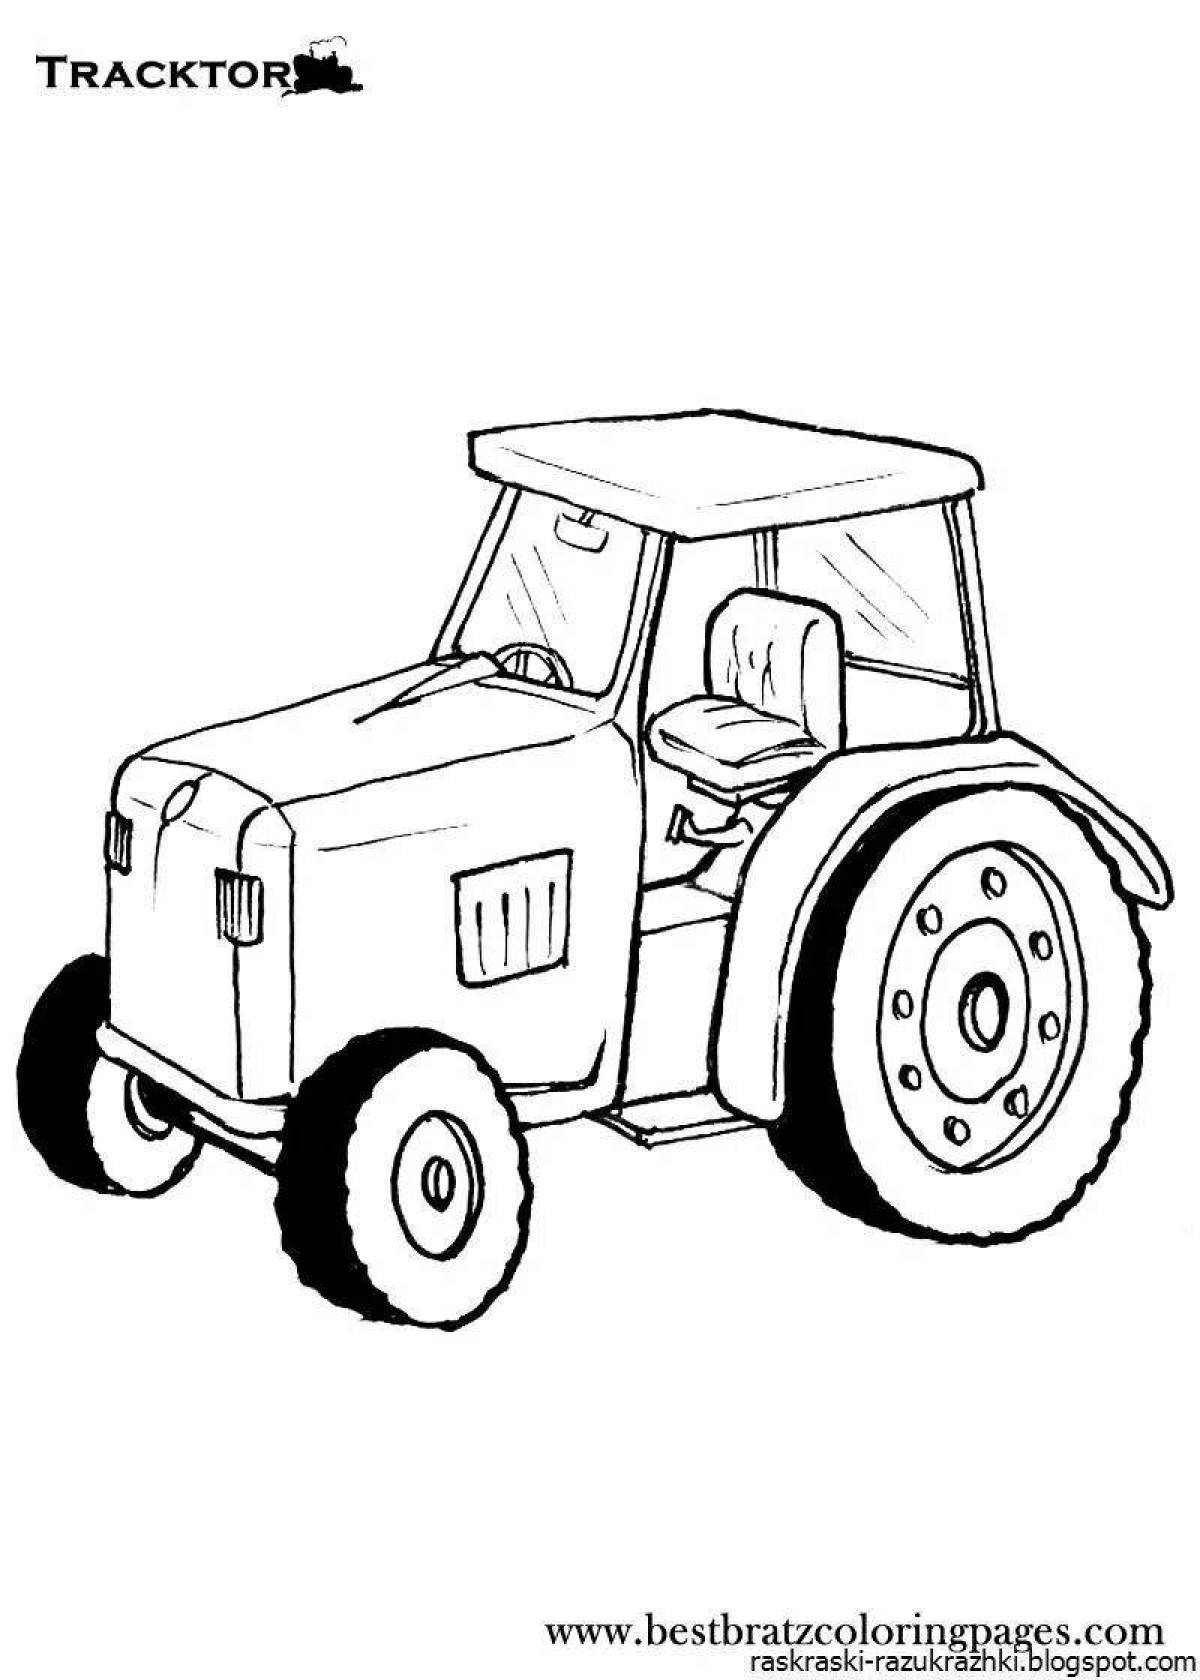 Безумный цветной рисунок трактора для детей